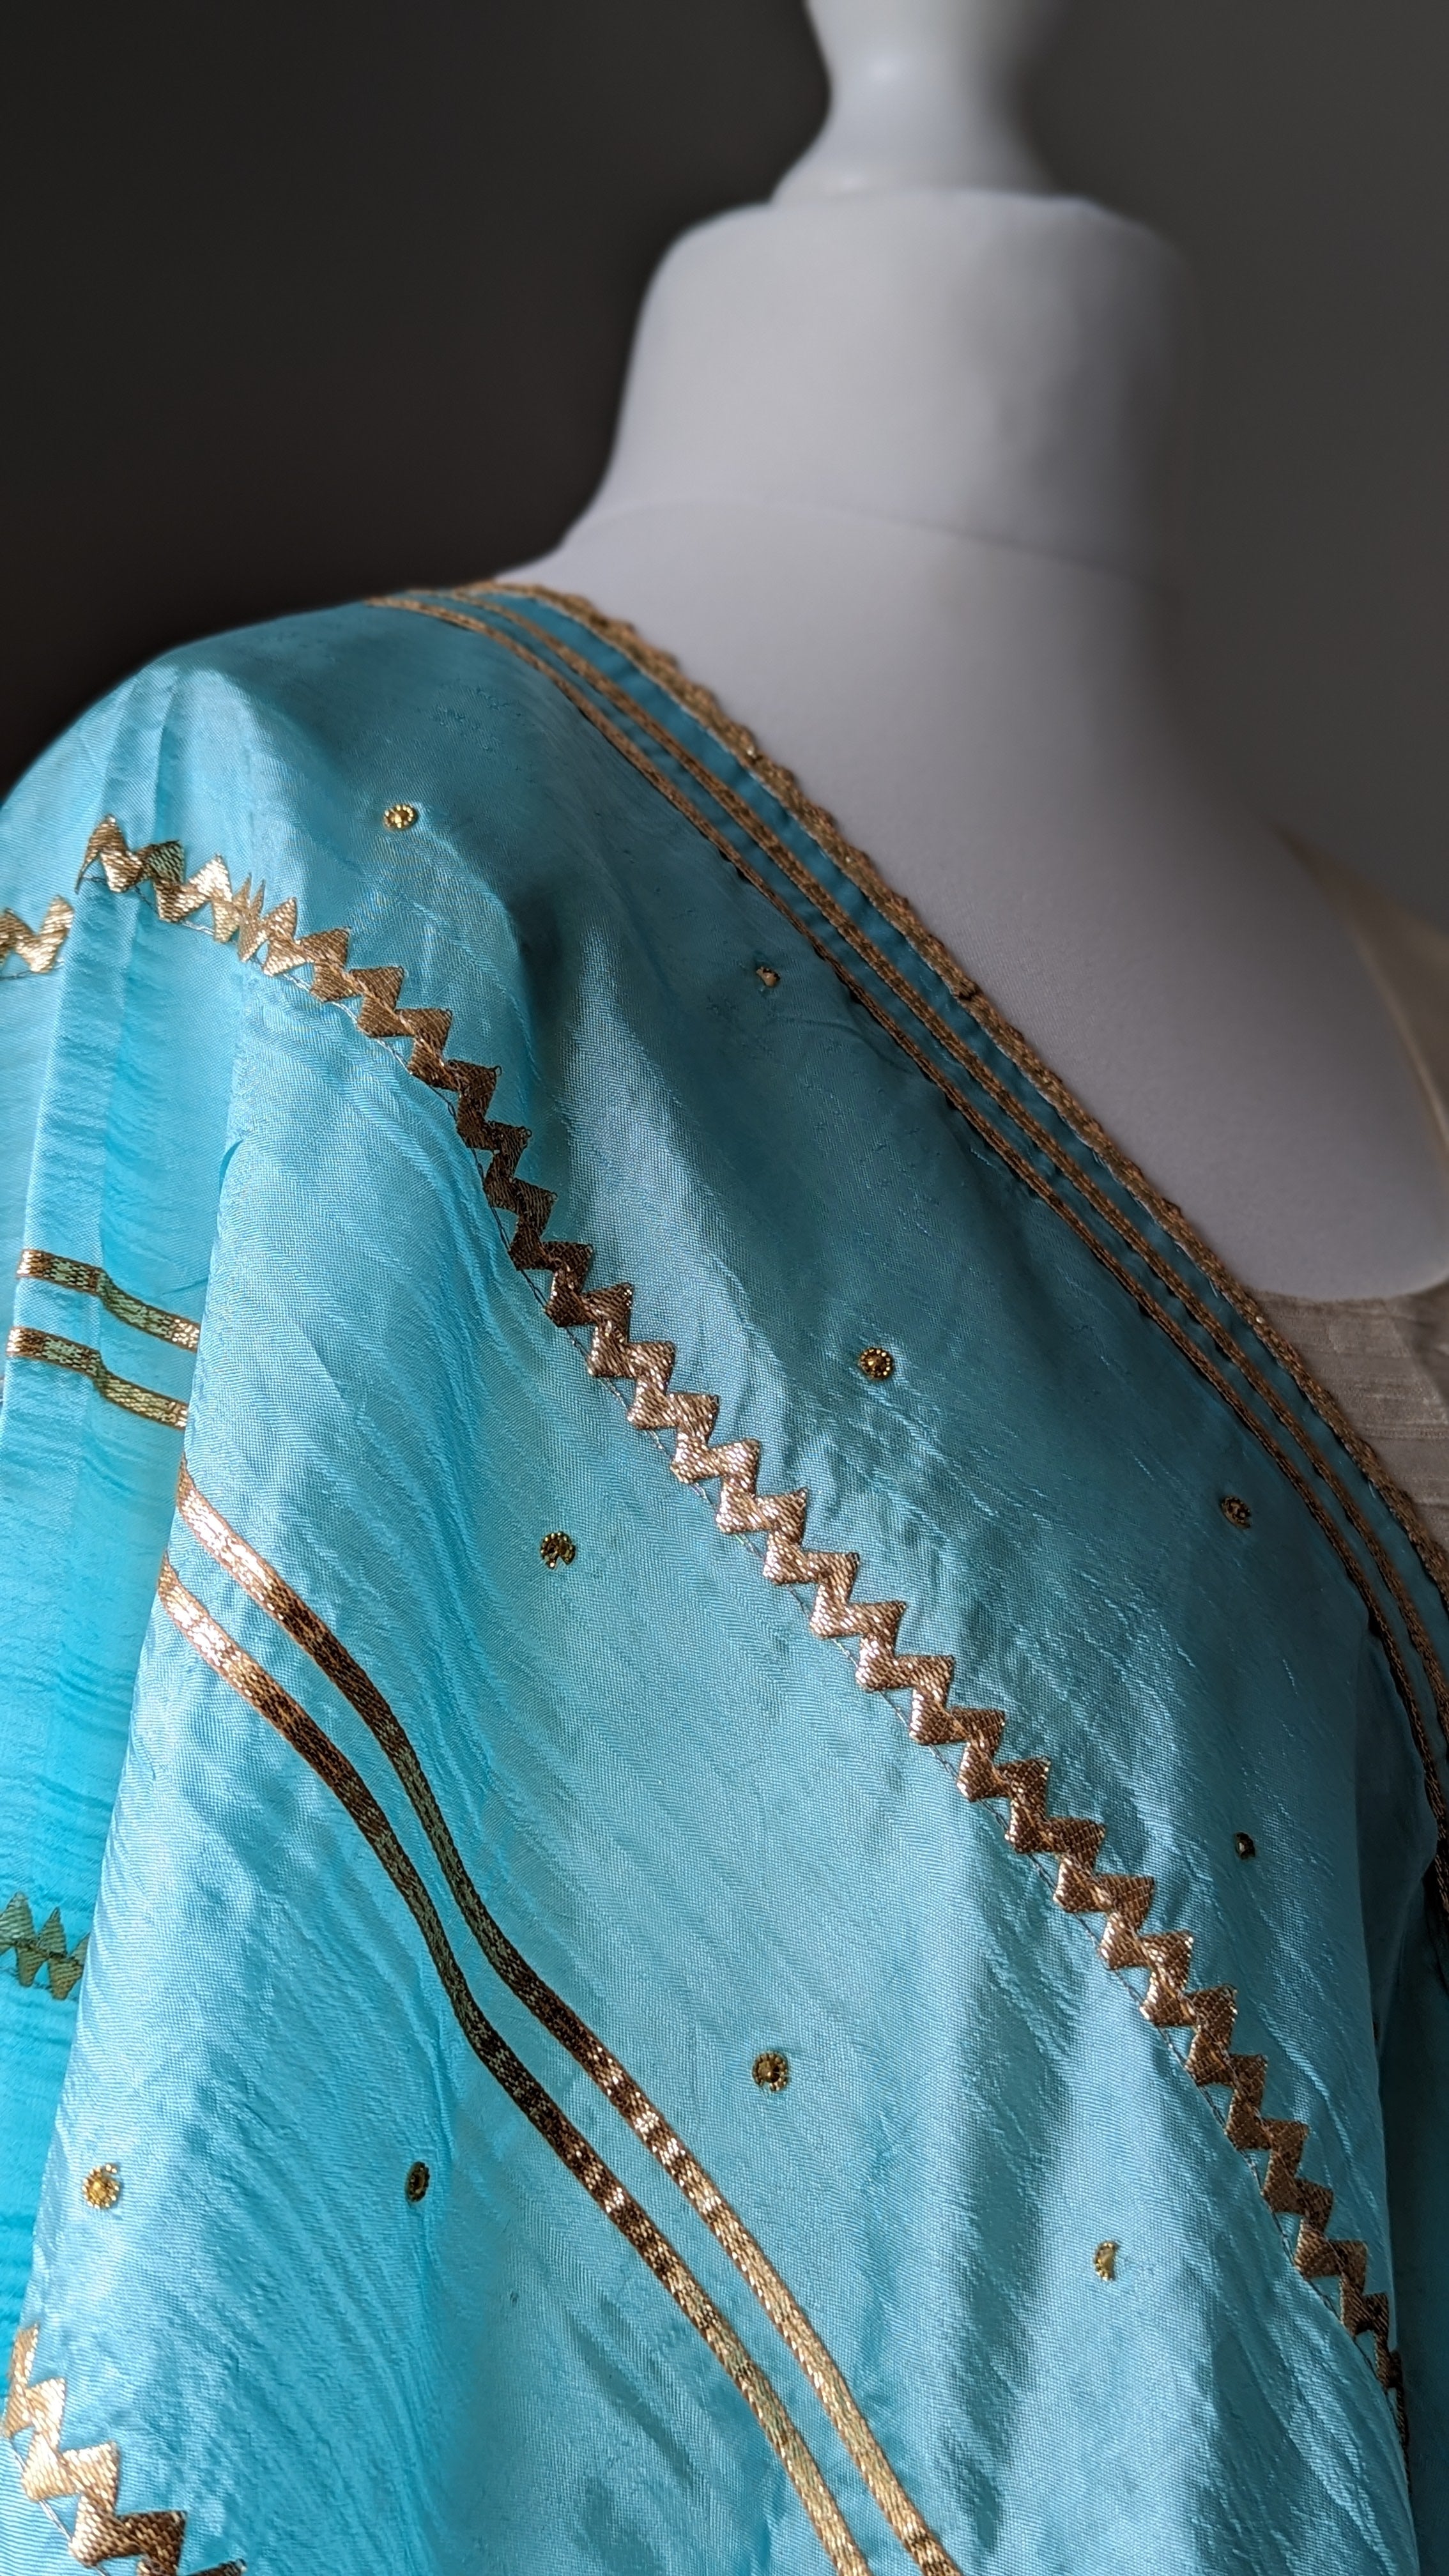 Blue Silk Dupatta (Shawl) with Gota Embroidery